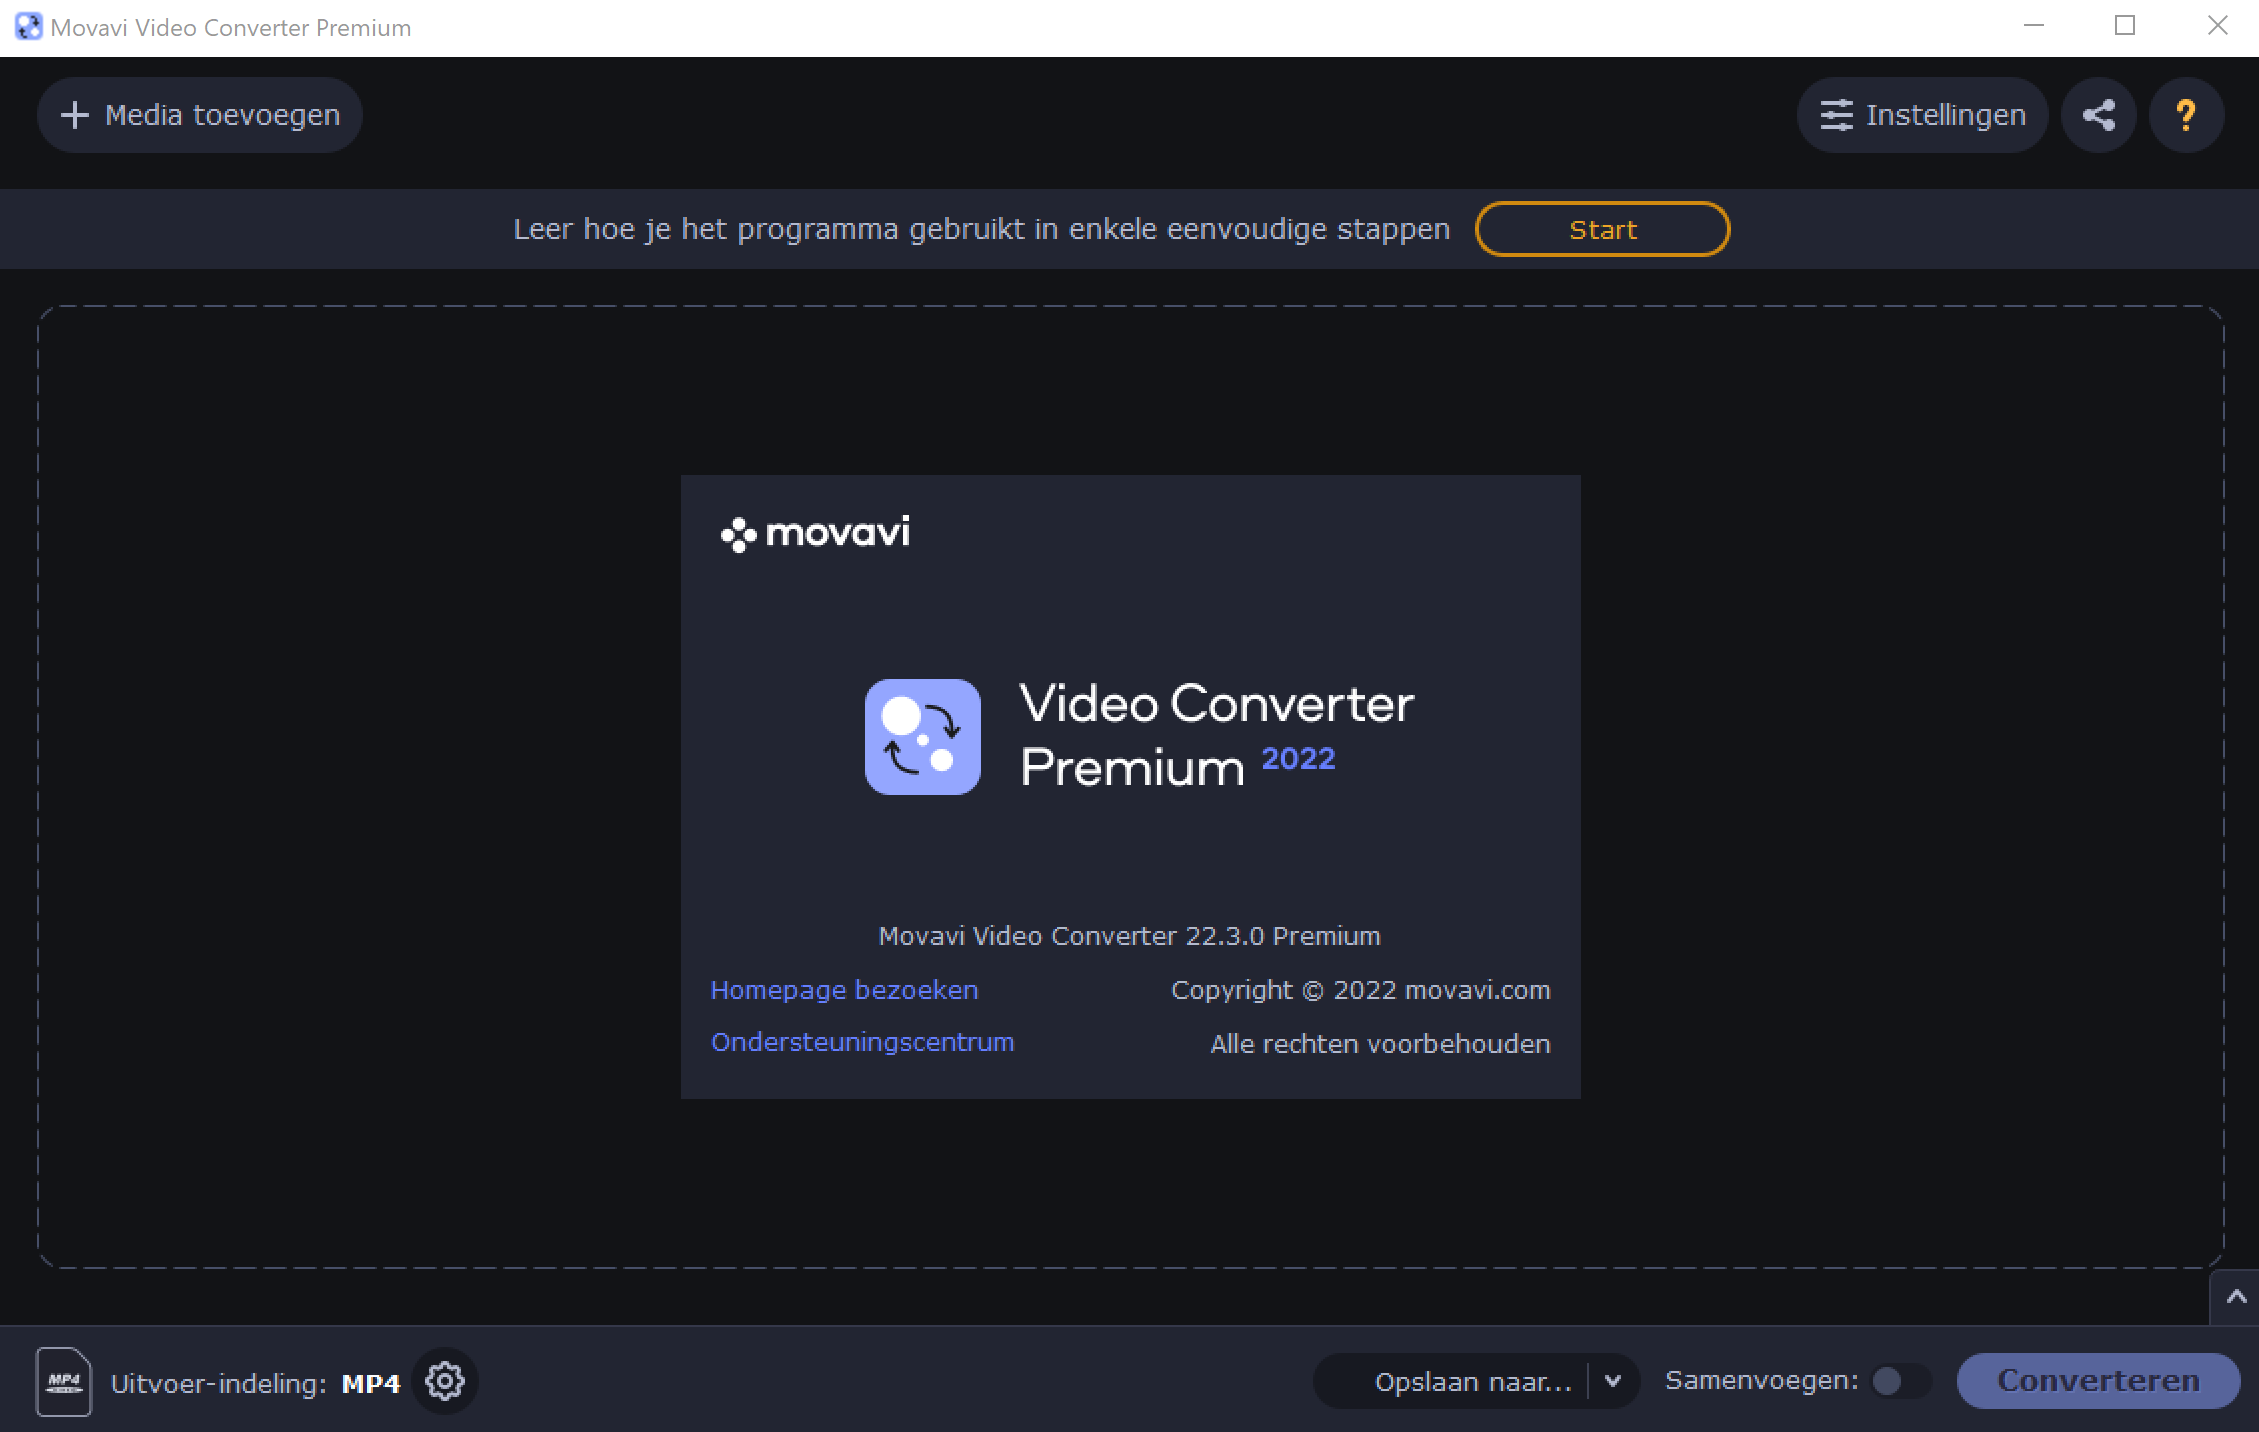 Movavi Video Converter Premium 2022 versie 22.3.0 (Nederlands)